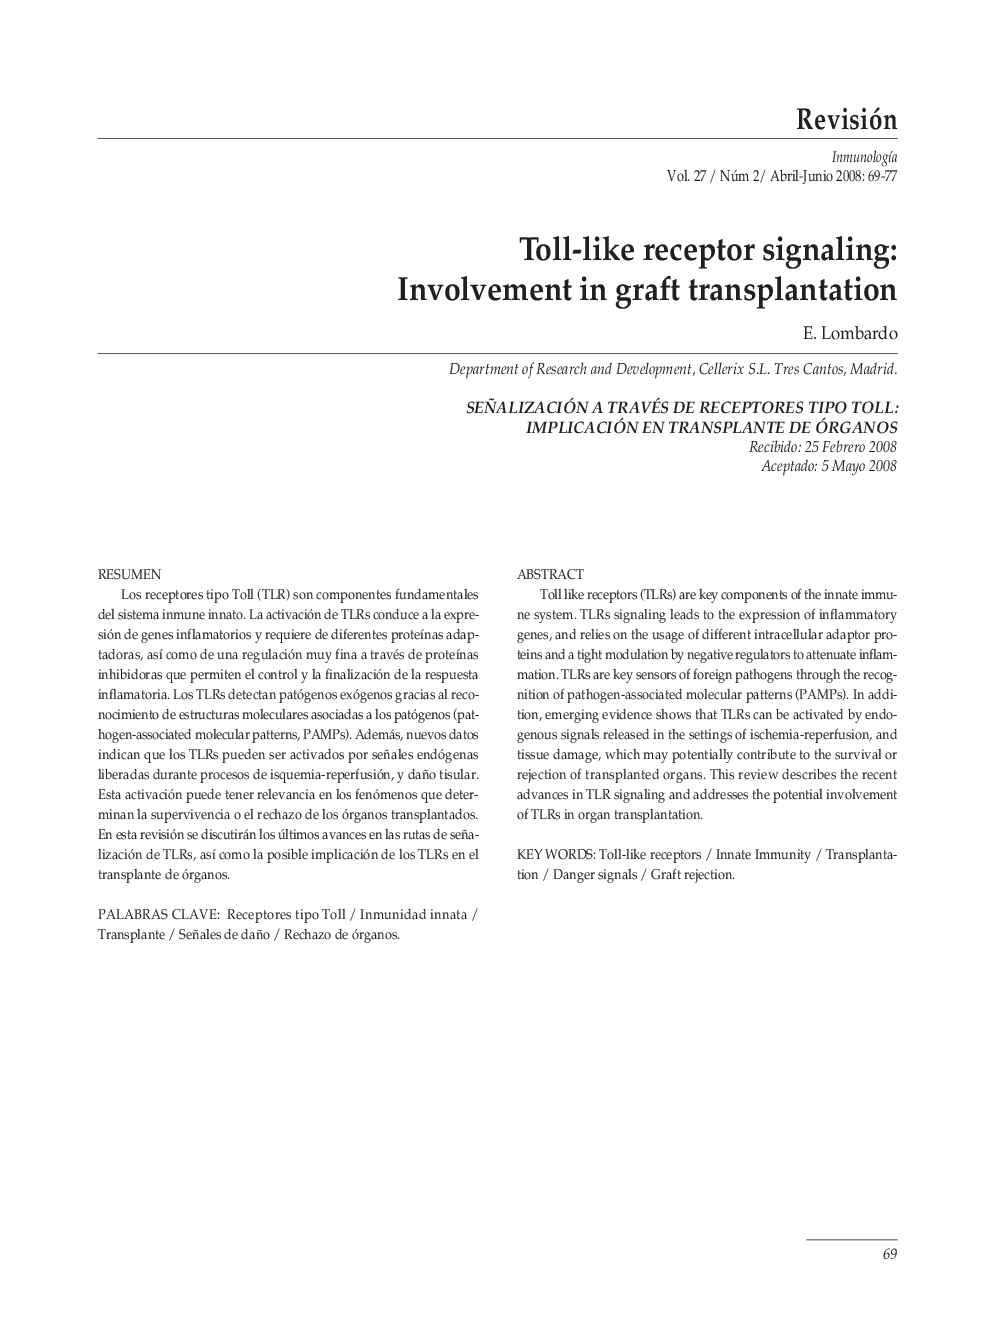 Toll-like receptor signaling: Involvement in graft transplantation